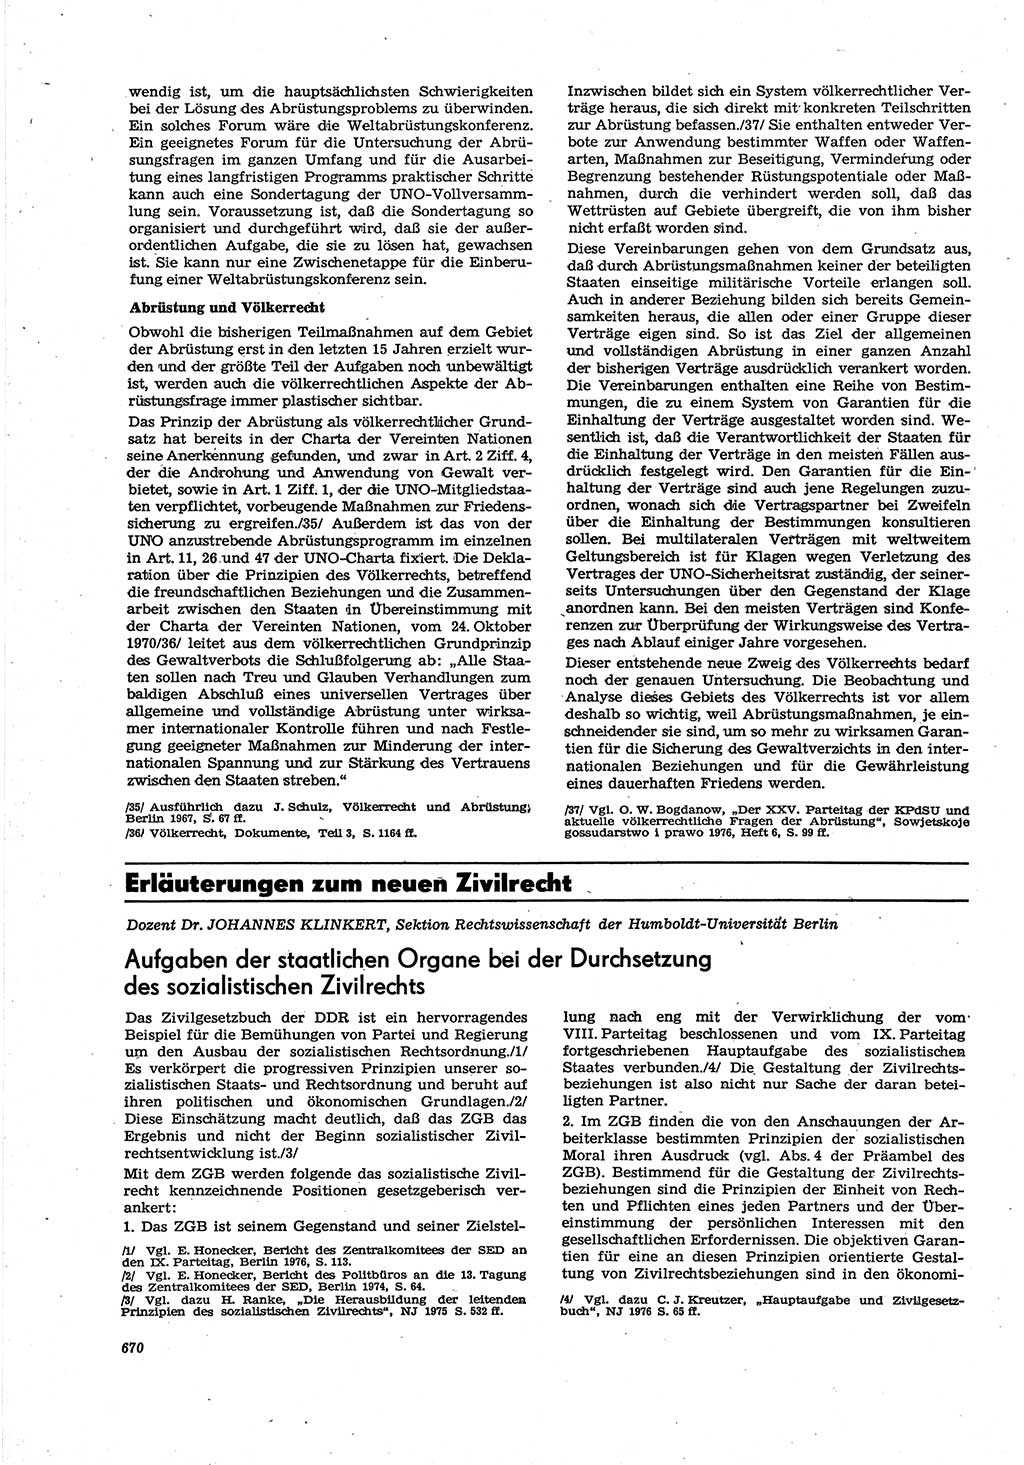 Neue Justiz (NJ), Zeitschrift für Recht und Rechtswissenschaft [Deutsche Demokratische Republik (DDR)], 30. Jahrgang 1976, Seite 670 (NJ DDR 1976, S. 670)